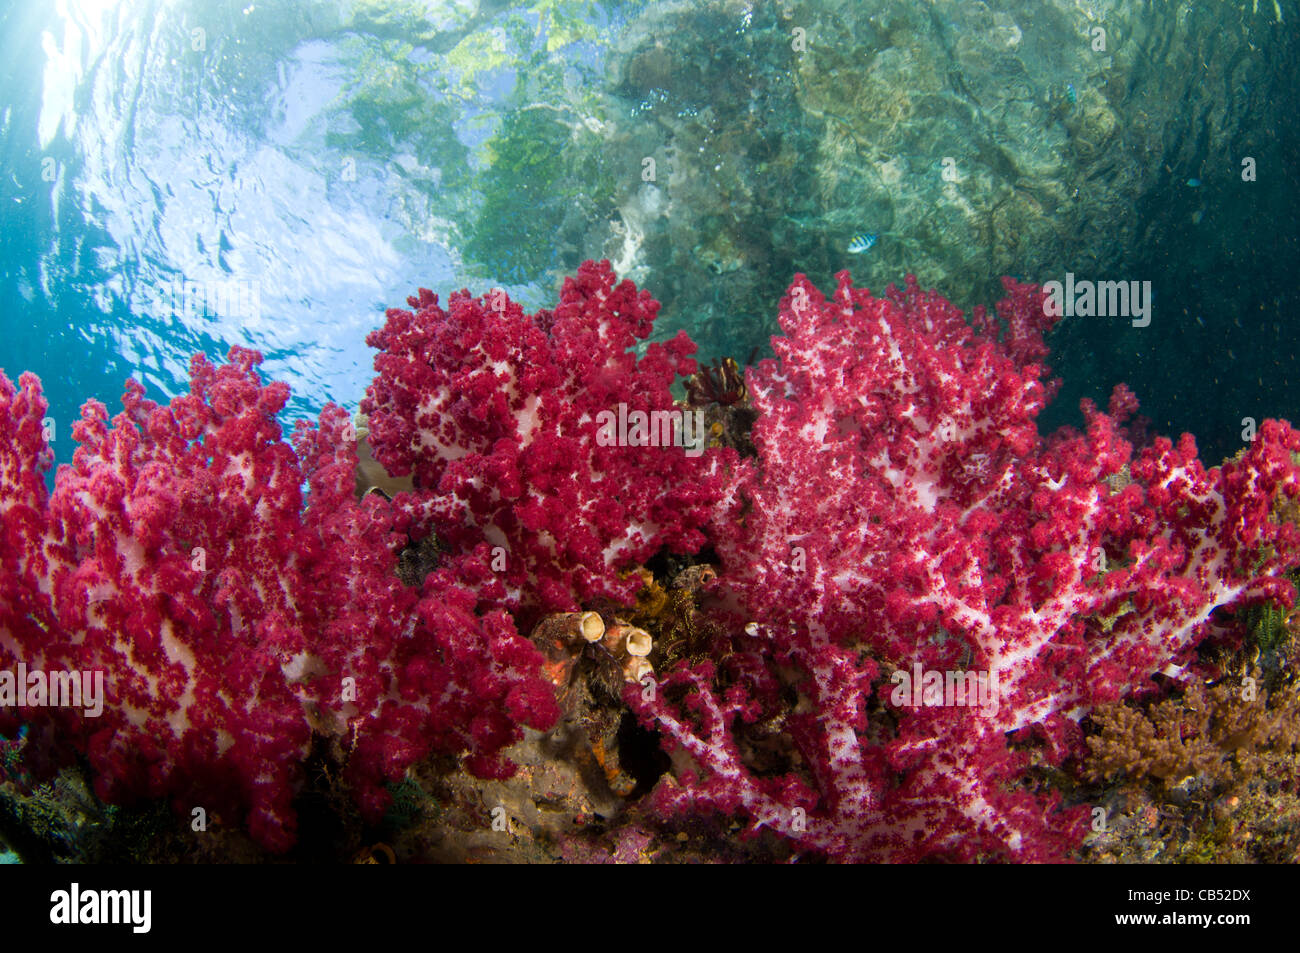 Coraux Mous, Dendronephthya sp., pousse dans les bas-fonds en vertu de la mangrove, Raja Ampat, Papouasie occidentale, en Indonésie, l'Océan Pacifique Banque D'Images